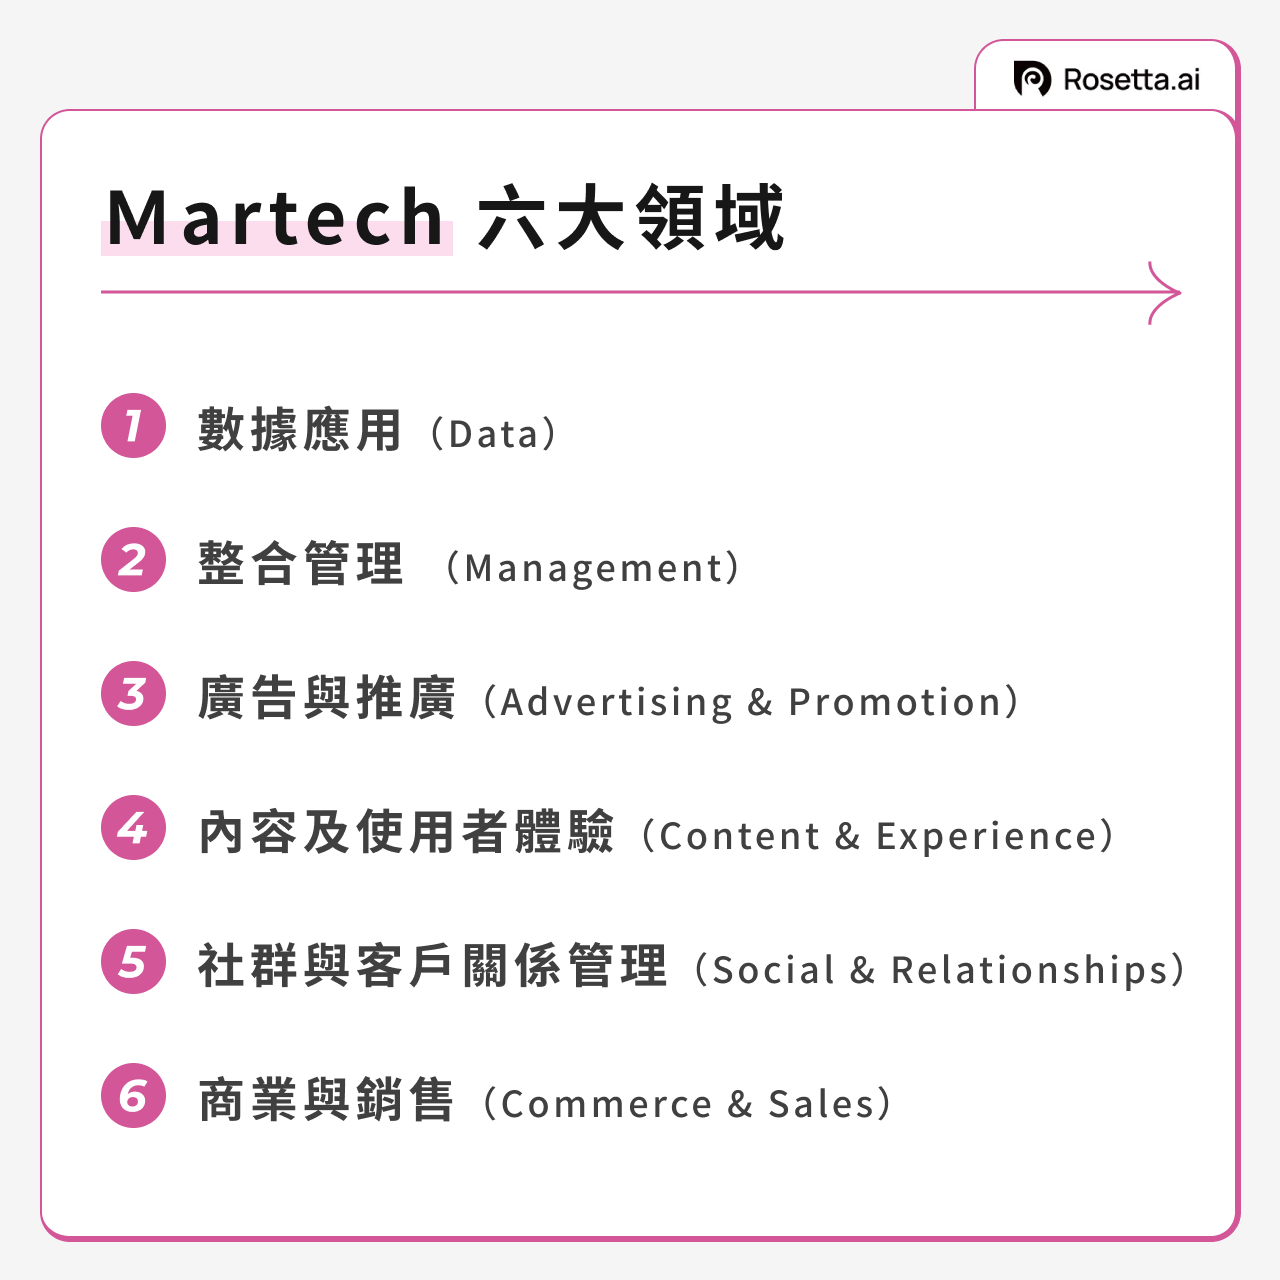 Martech 共有六大領域分別為：數據應用、整合管理、廣告與推廣、內容及使用者體驗、社群與客戶關係管理和商業銷售